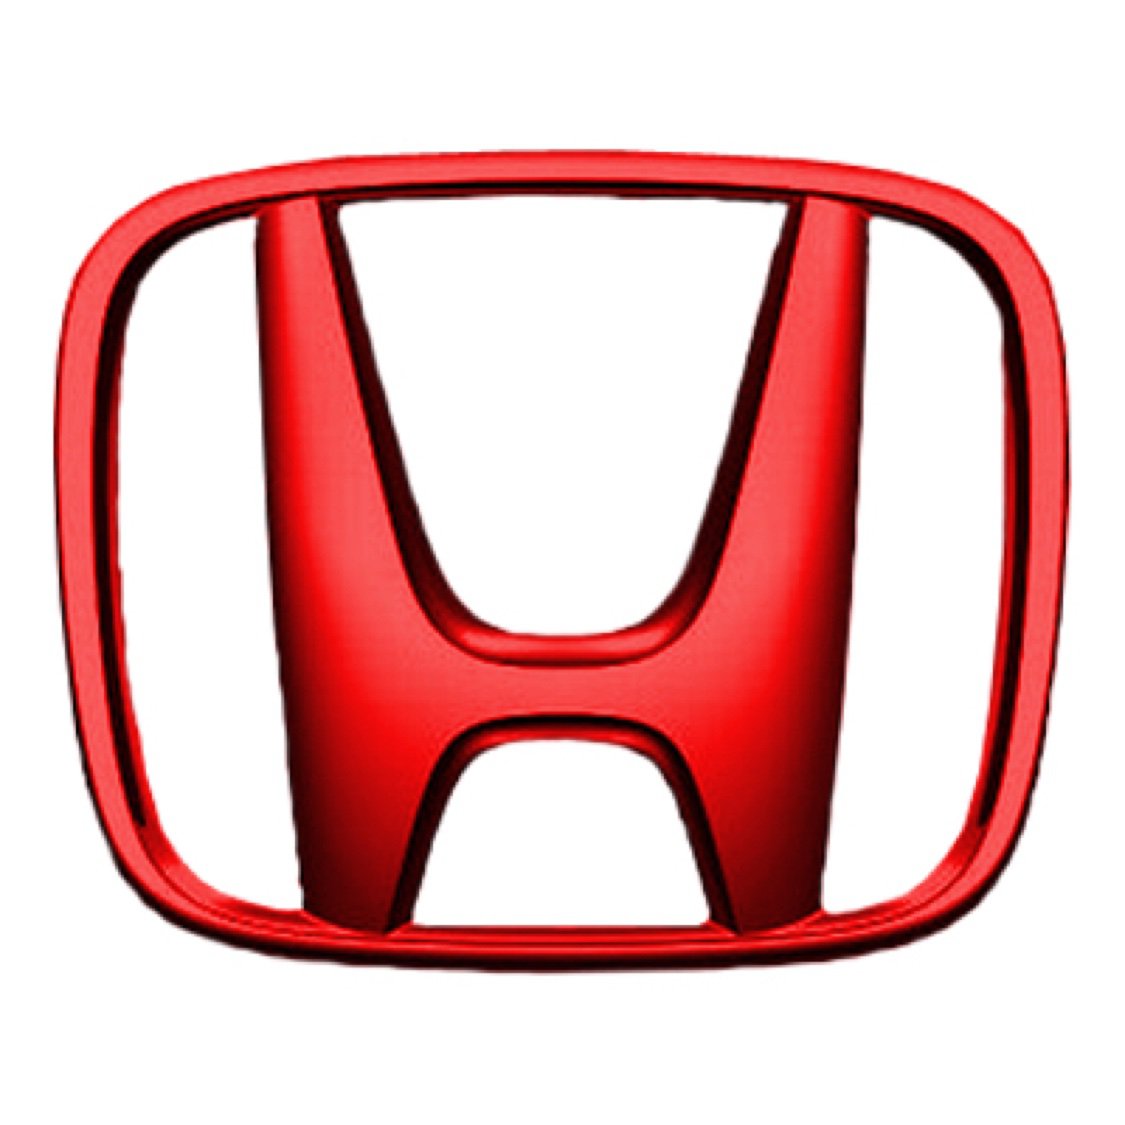 Honda Иваново